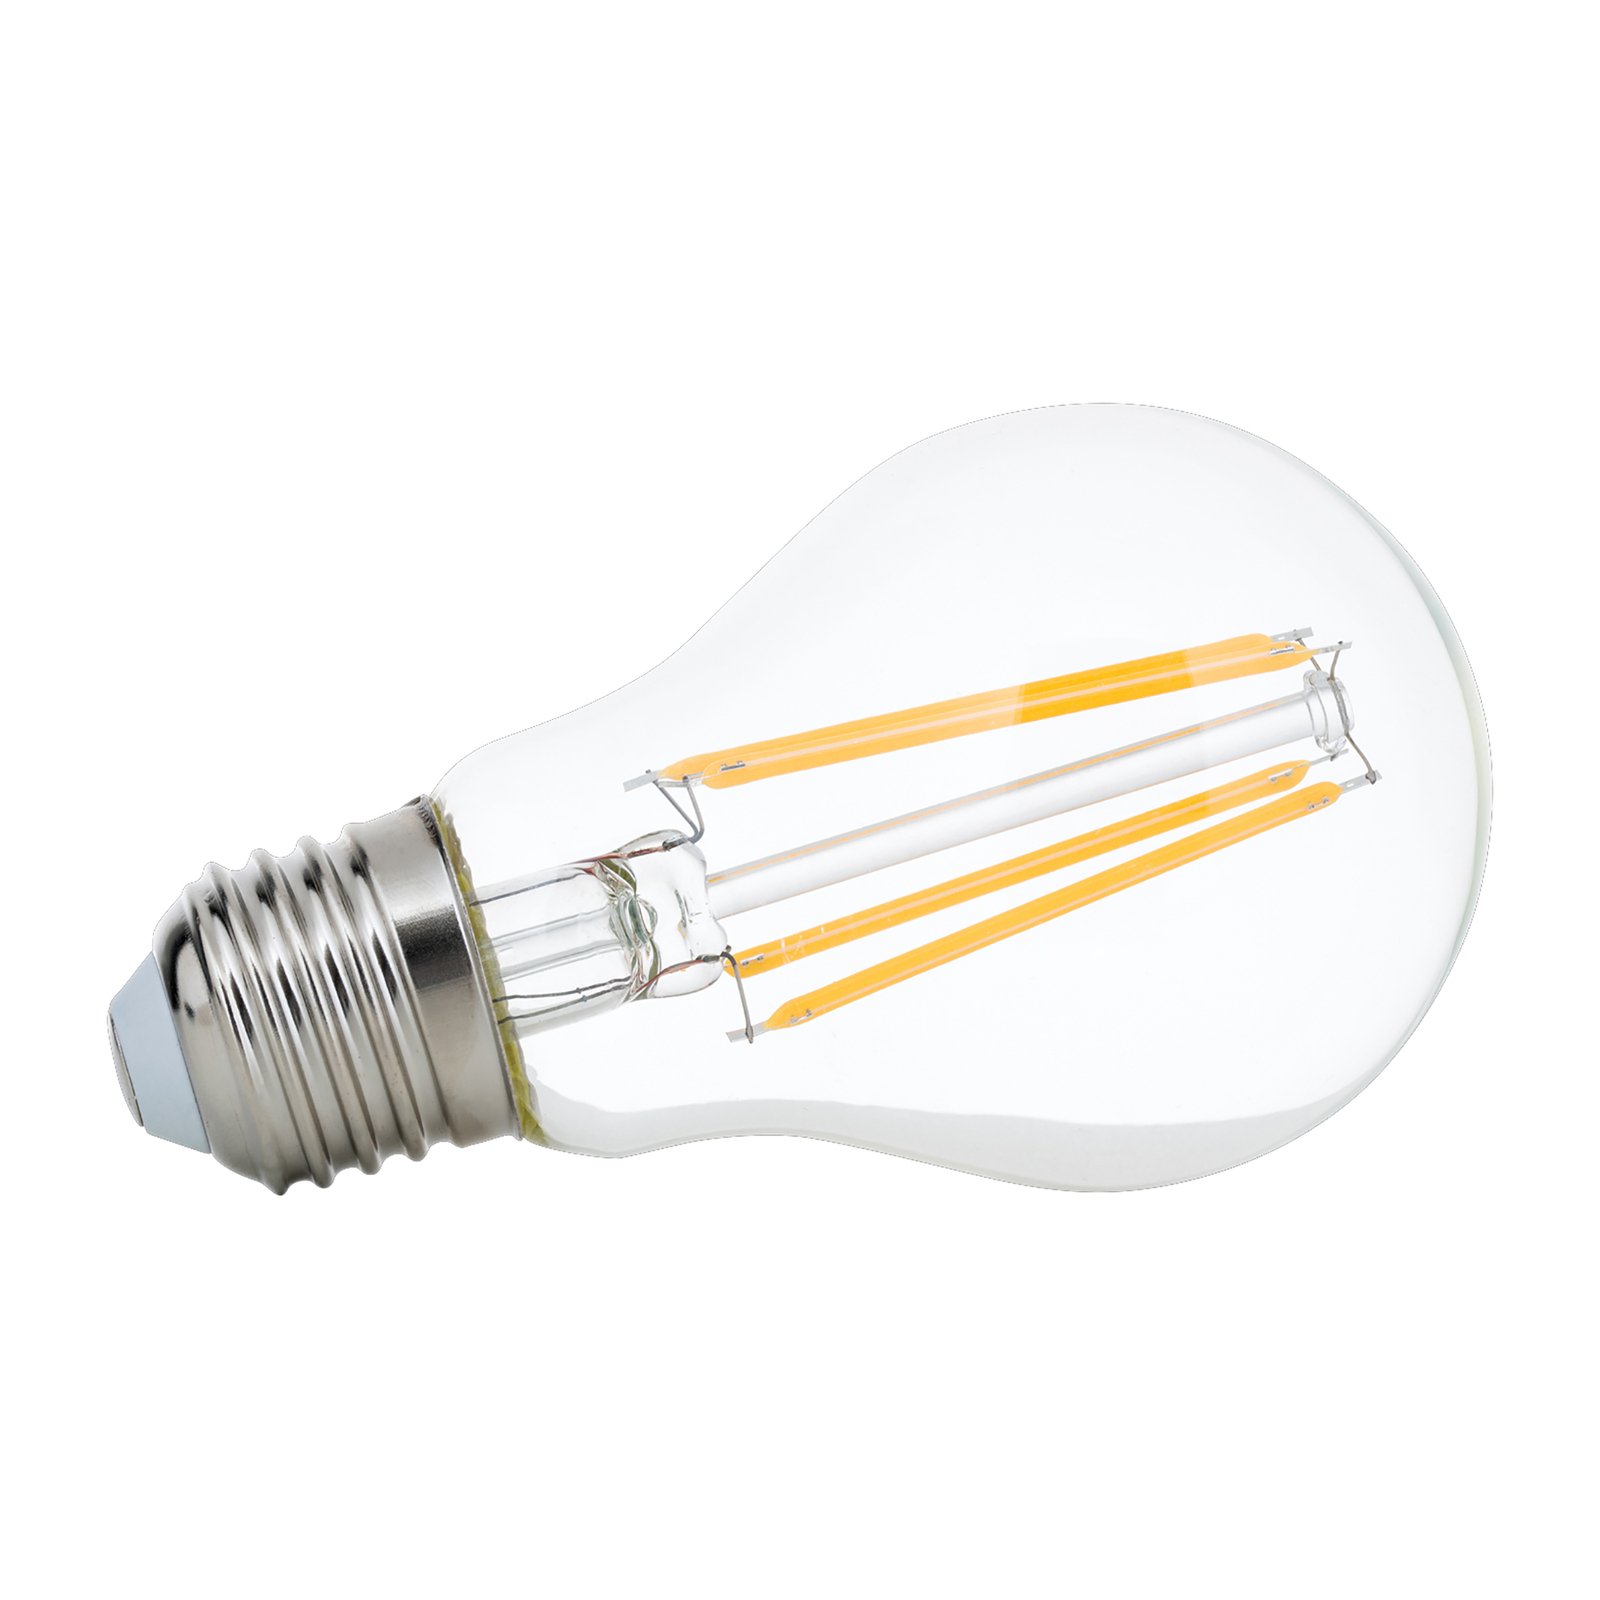 LED žiarovka E27 8 W filament 2 700K stmievateľná